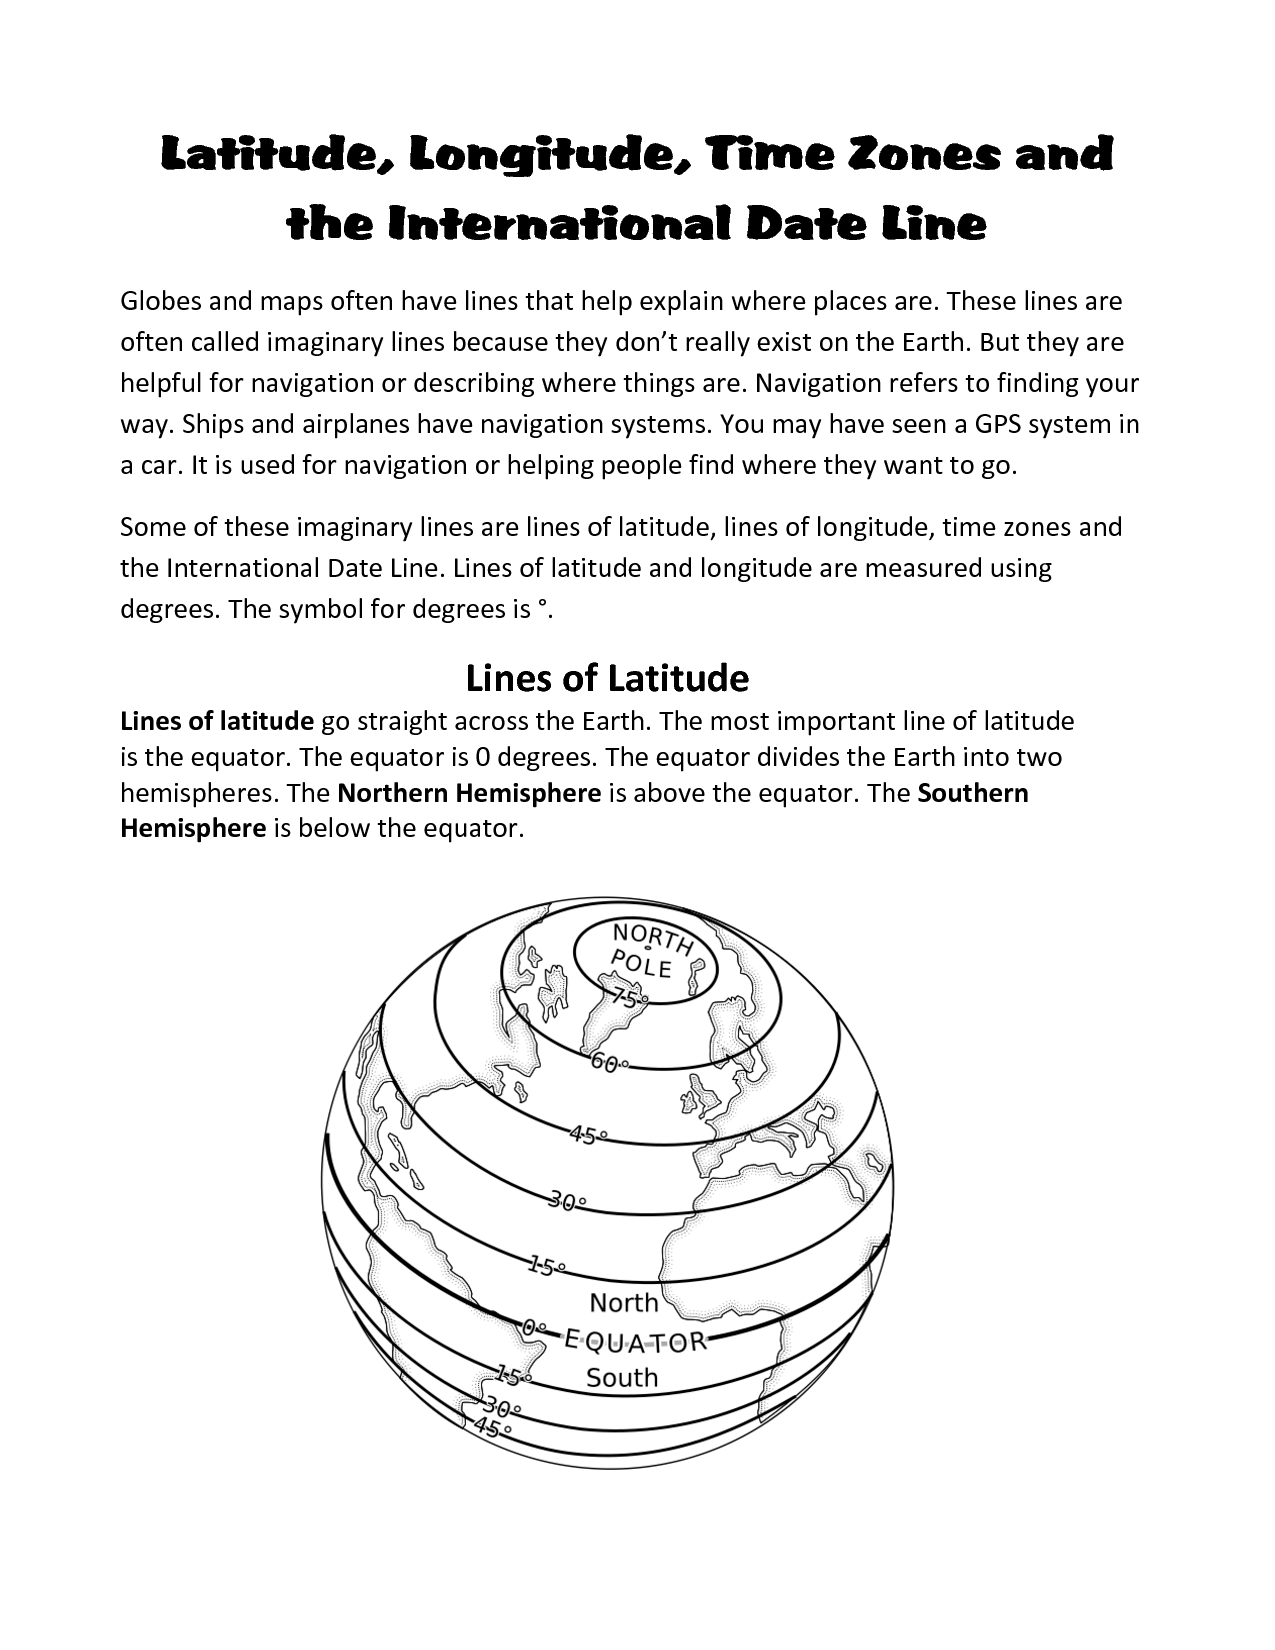 Time Zones Longitude and Latitude Worksheet Image